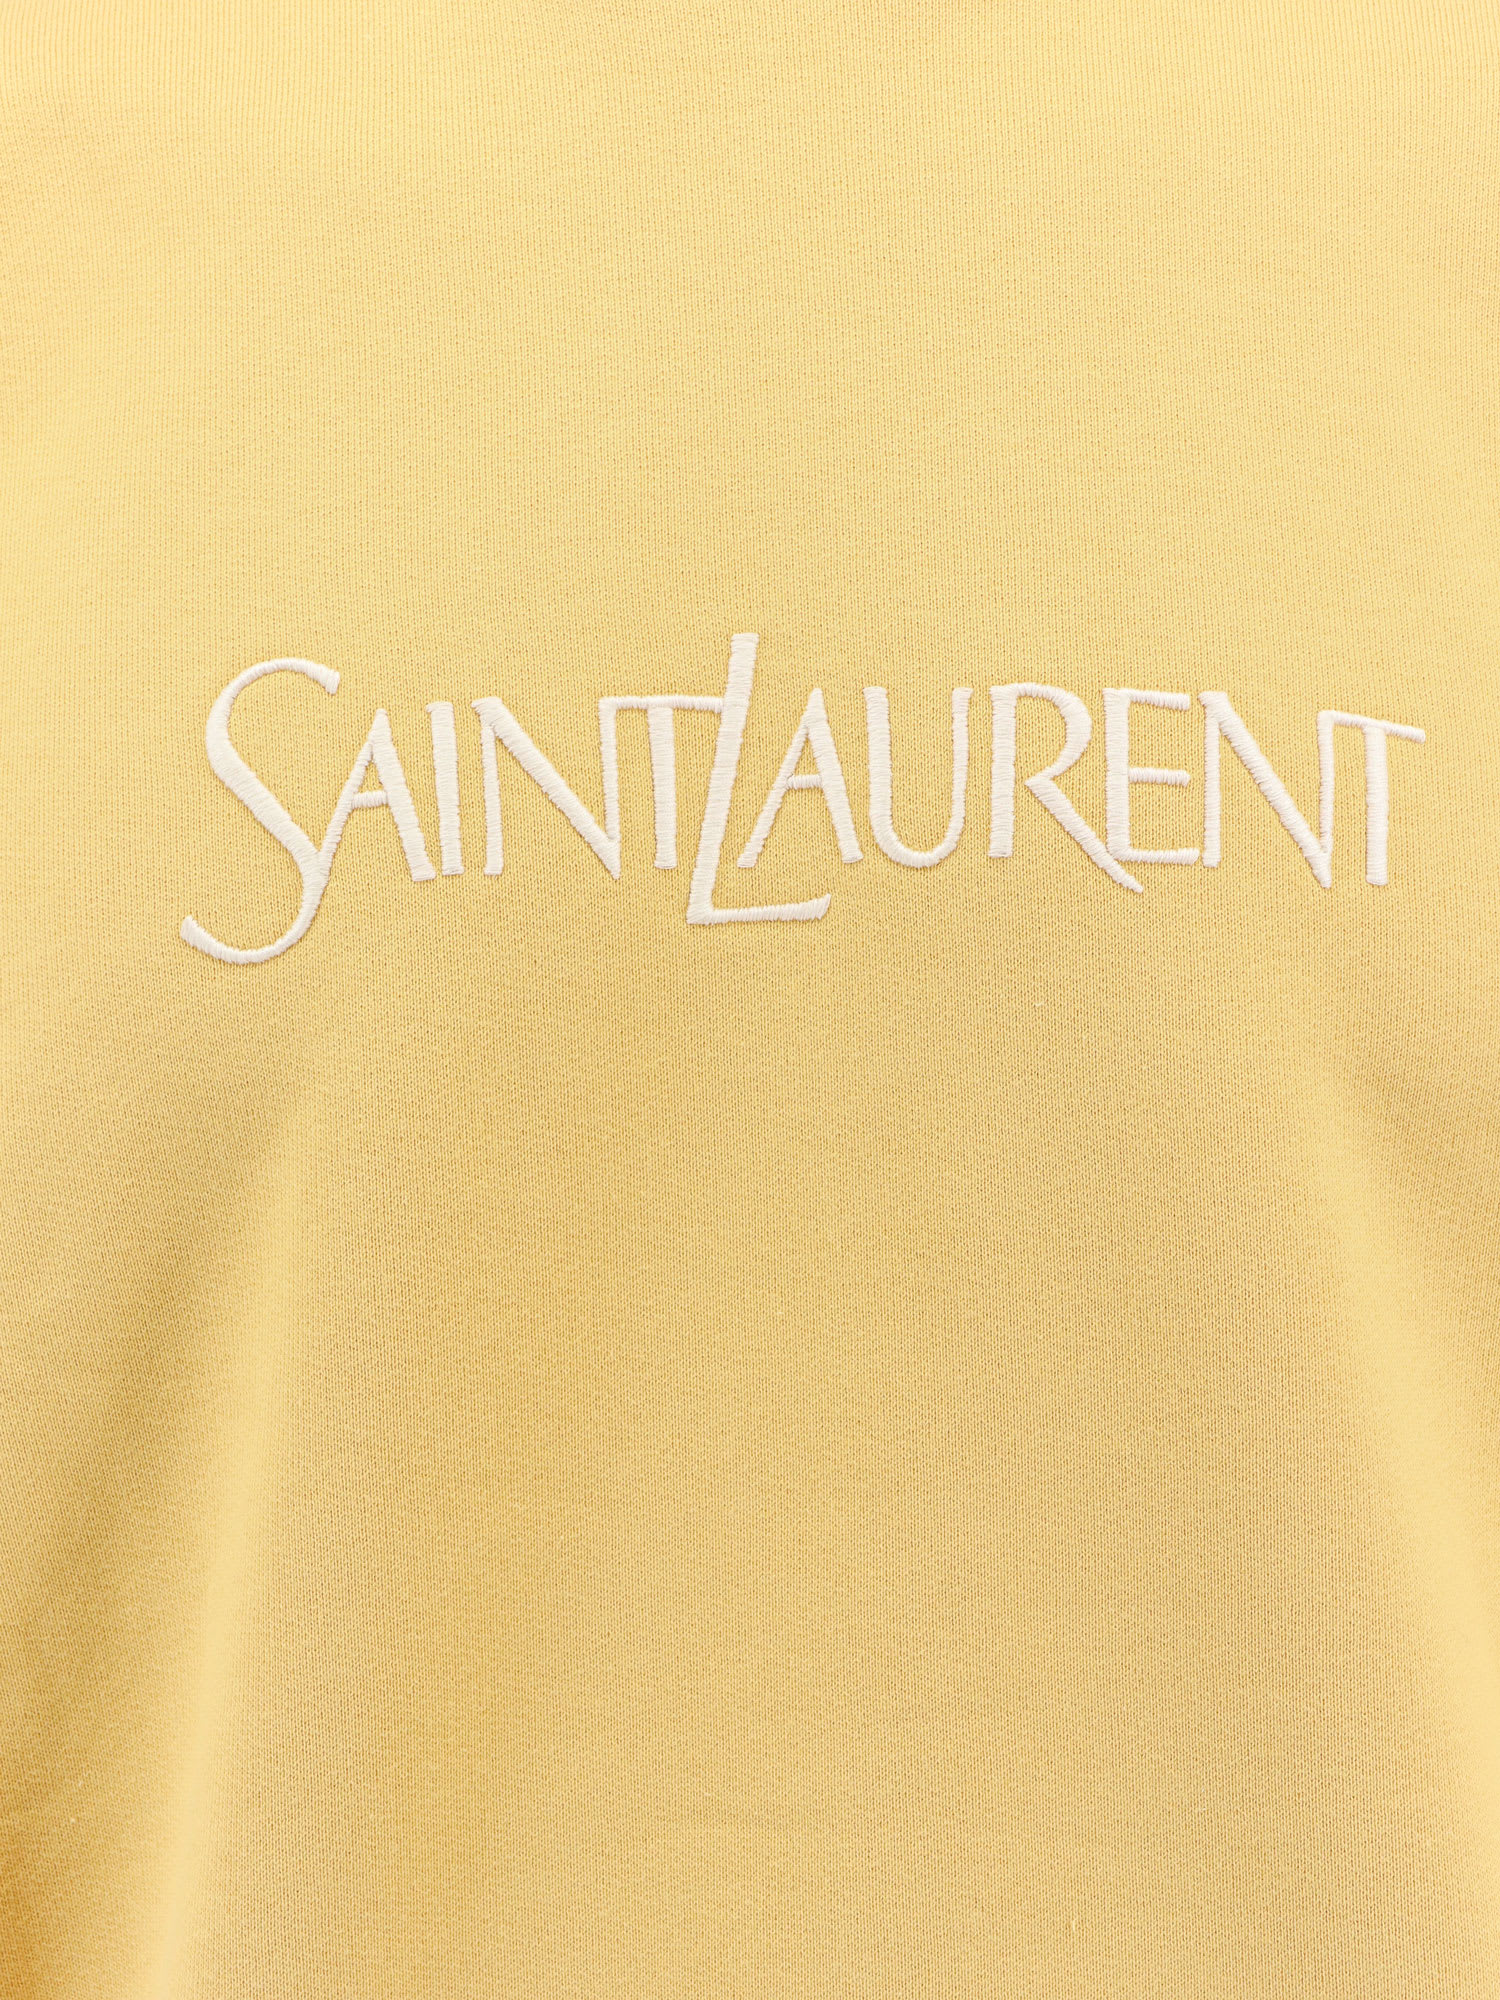 Shop Saint Laurent Sweatshirt In Natural